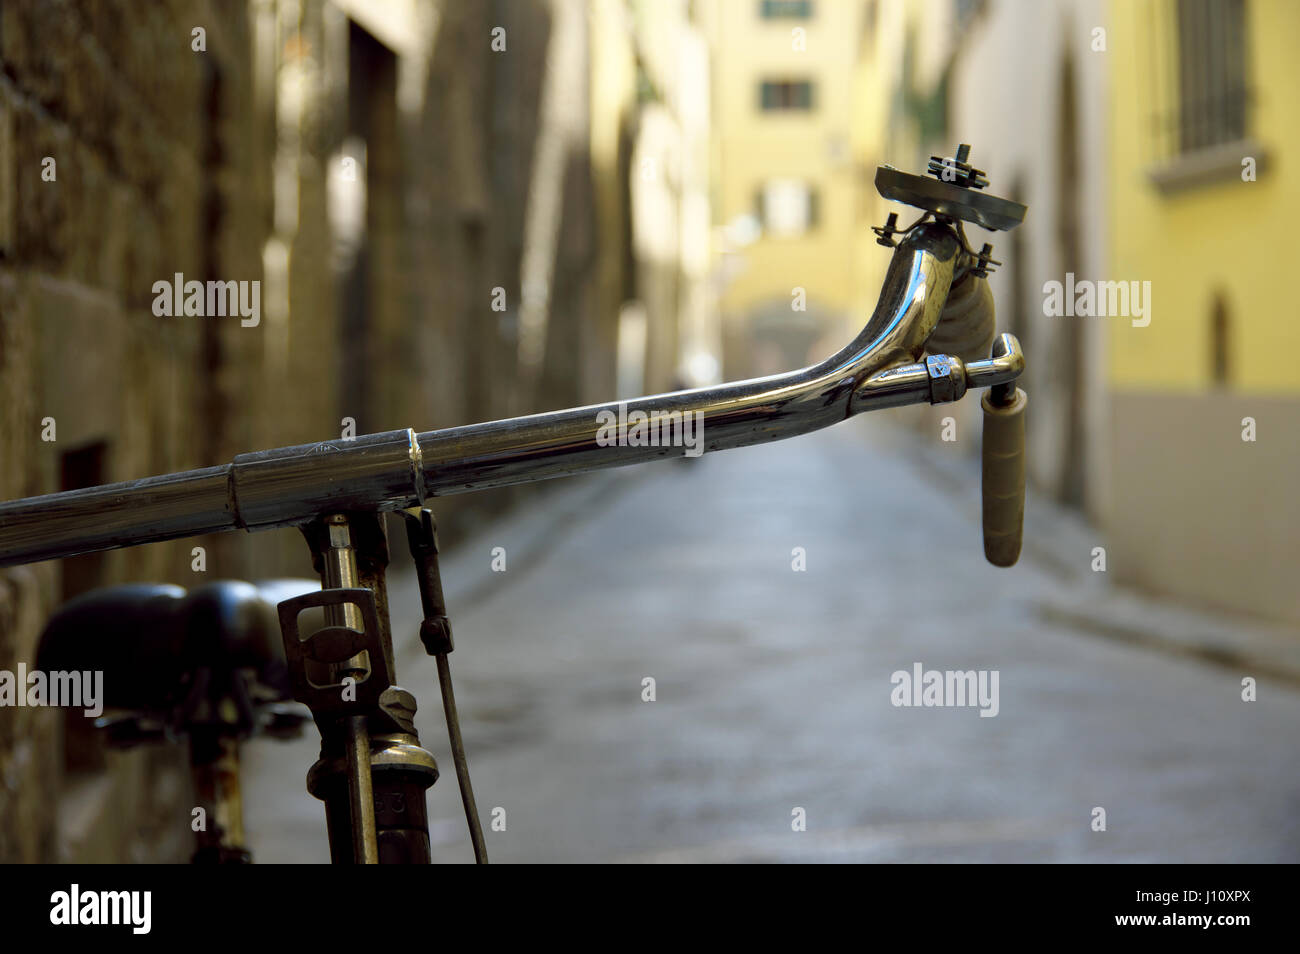 Manubrio di bicicletta dettaglio contro un bokeh Vicolo nel centro di Firenze (Firenze), Toscana, Italia, Europa - il fuoco selettivo sul manubrio Foto Stock